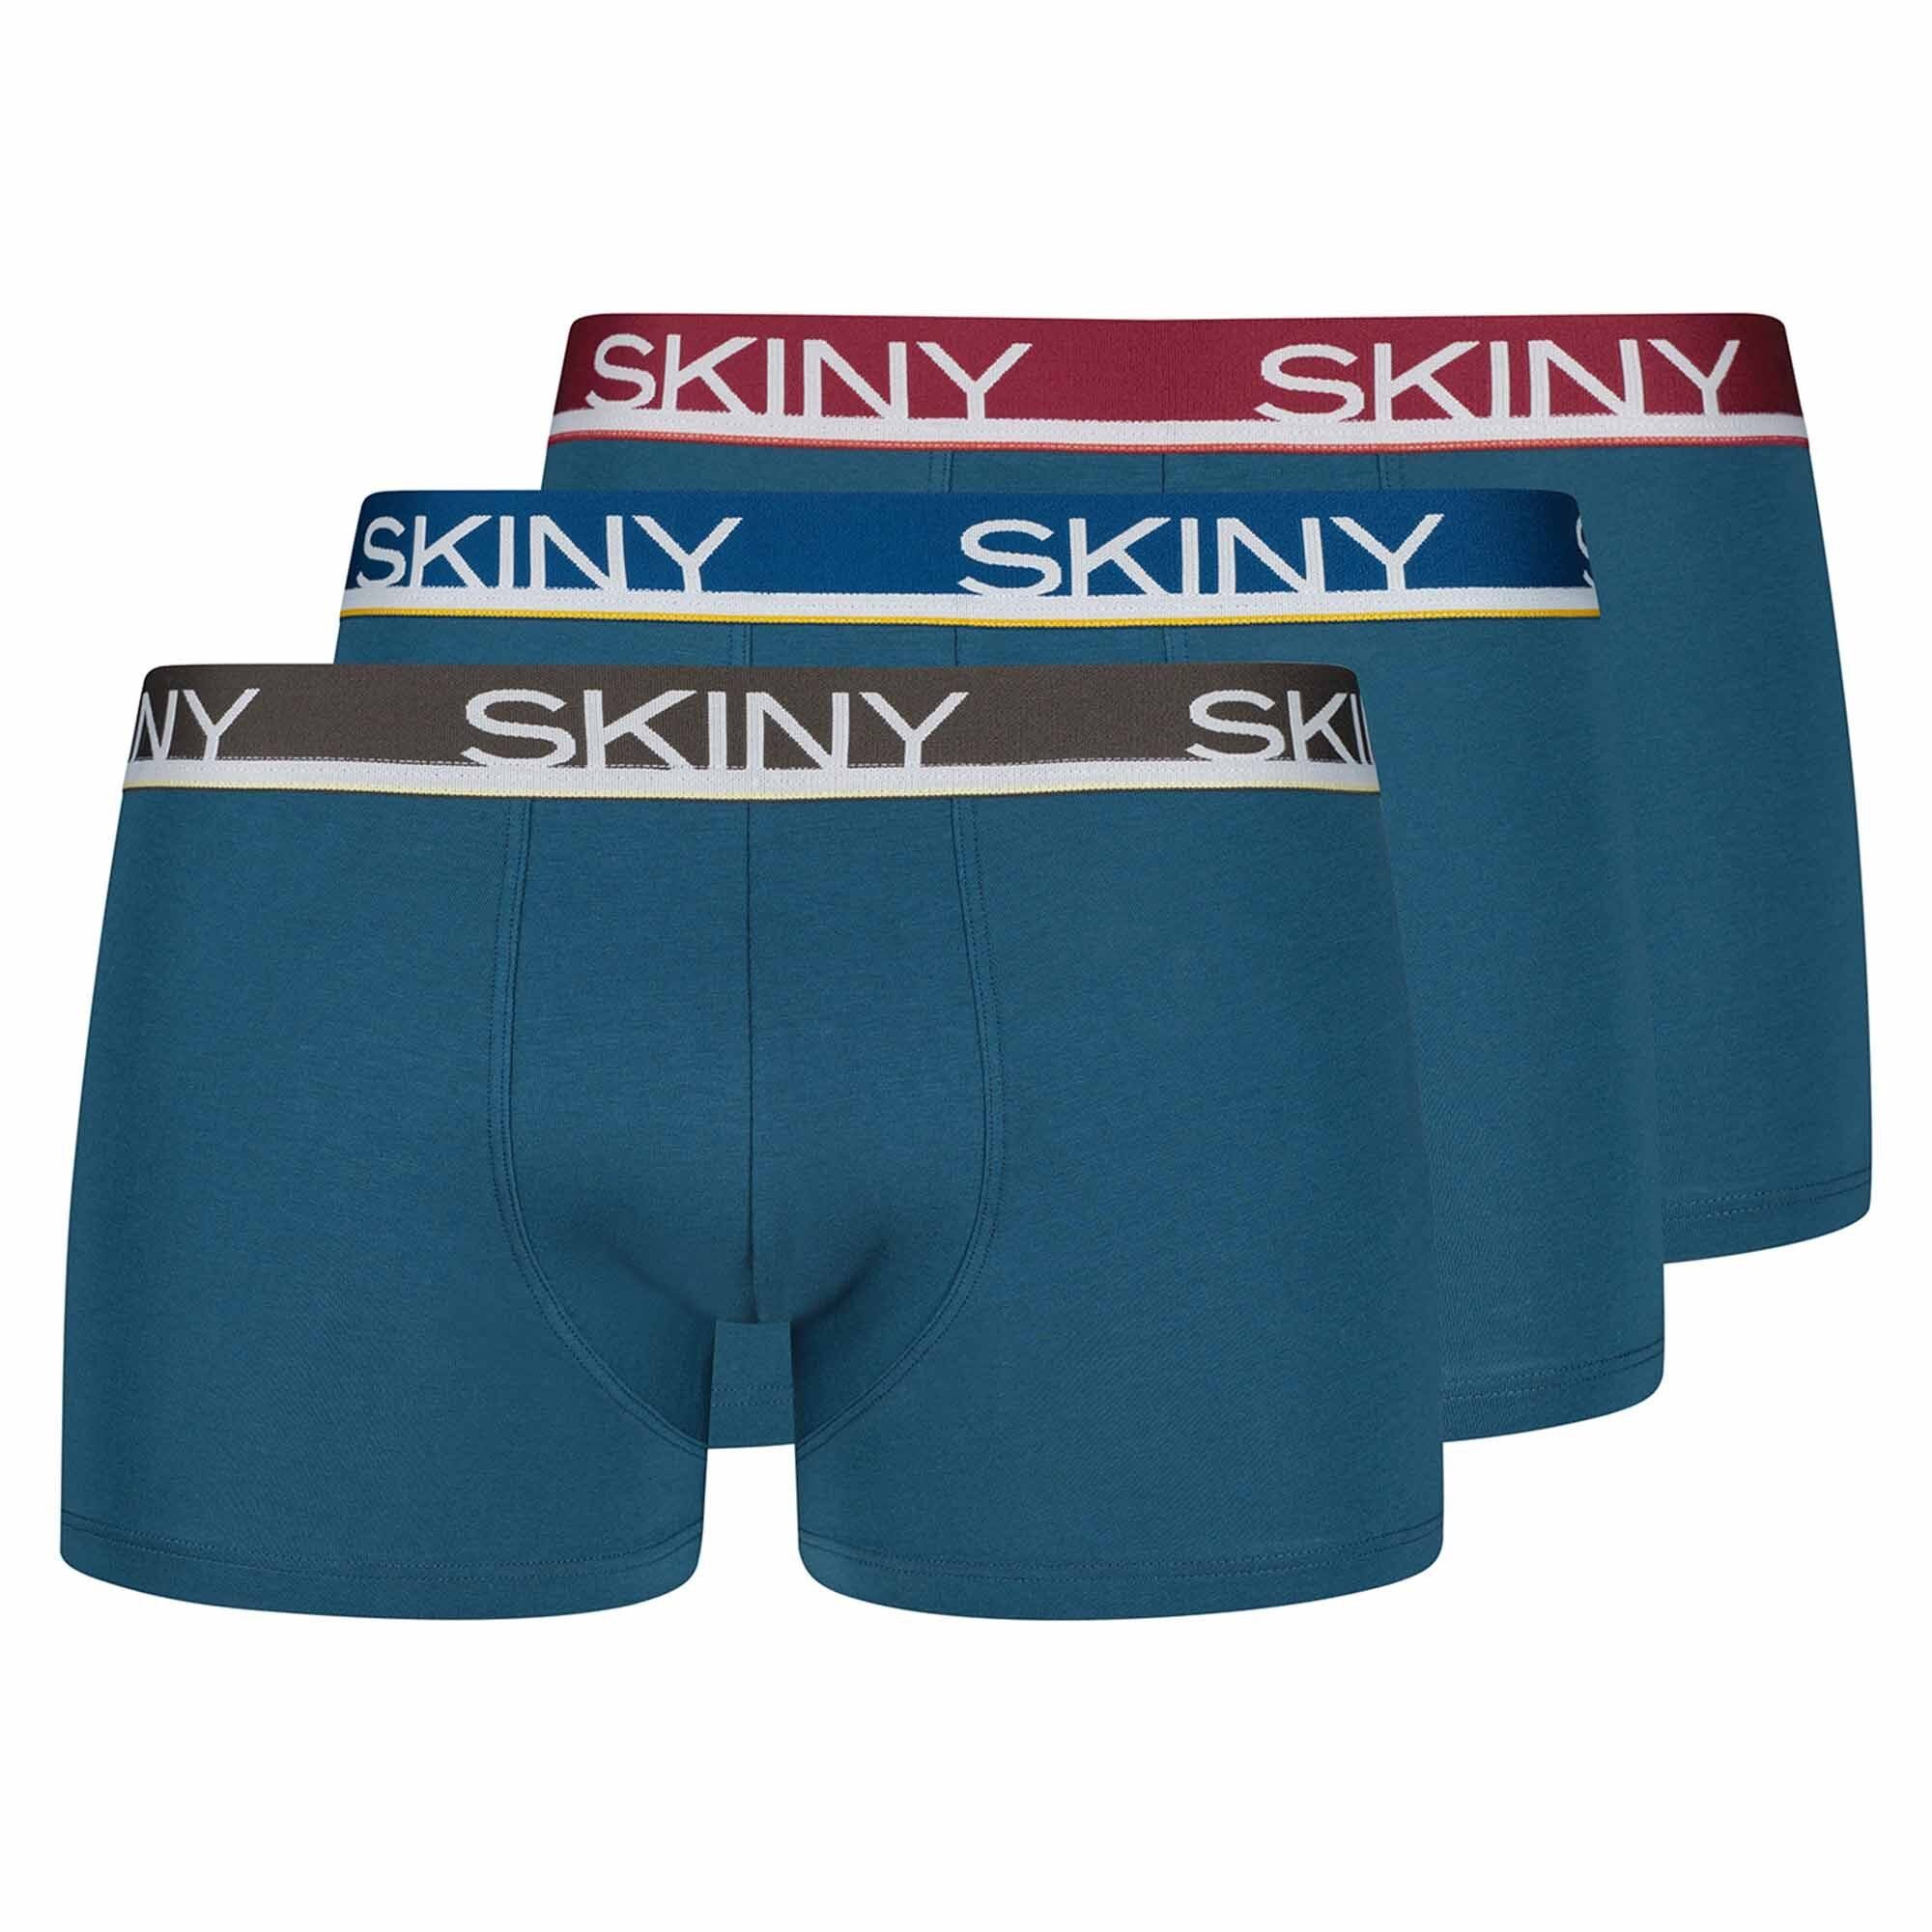 Skiny Herren Unterwäsche online kaufen